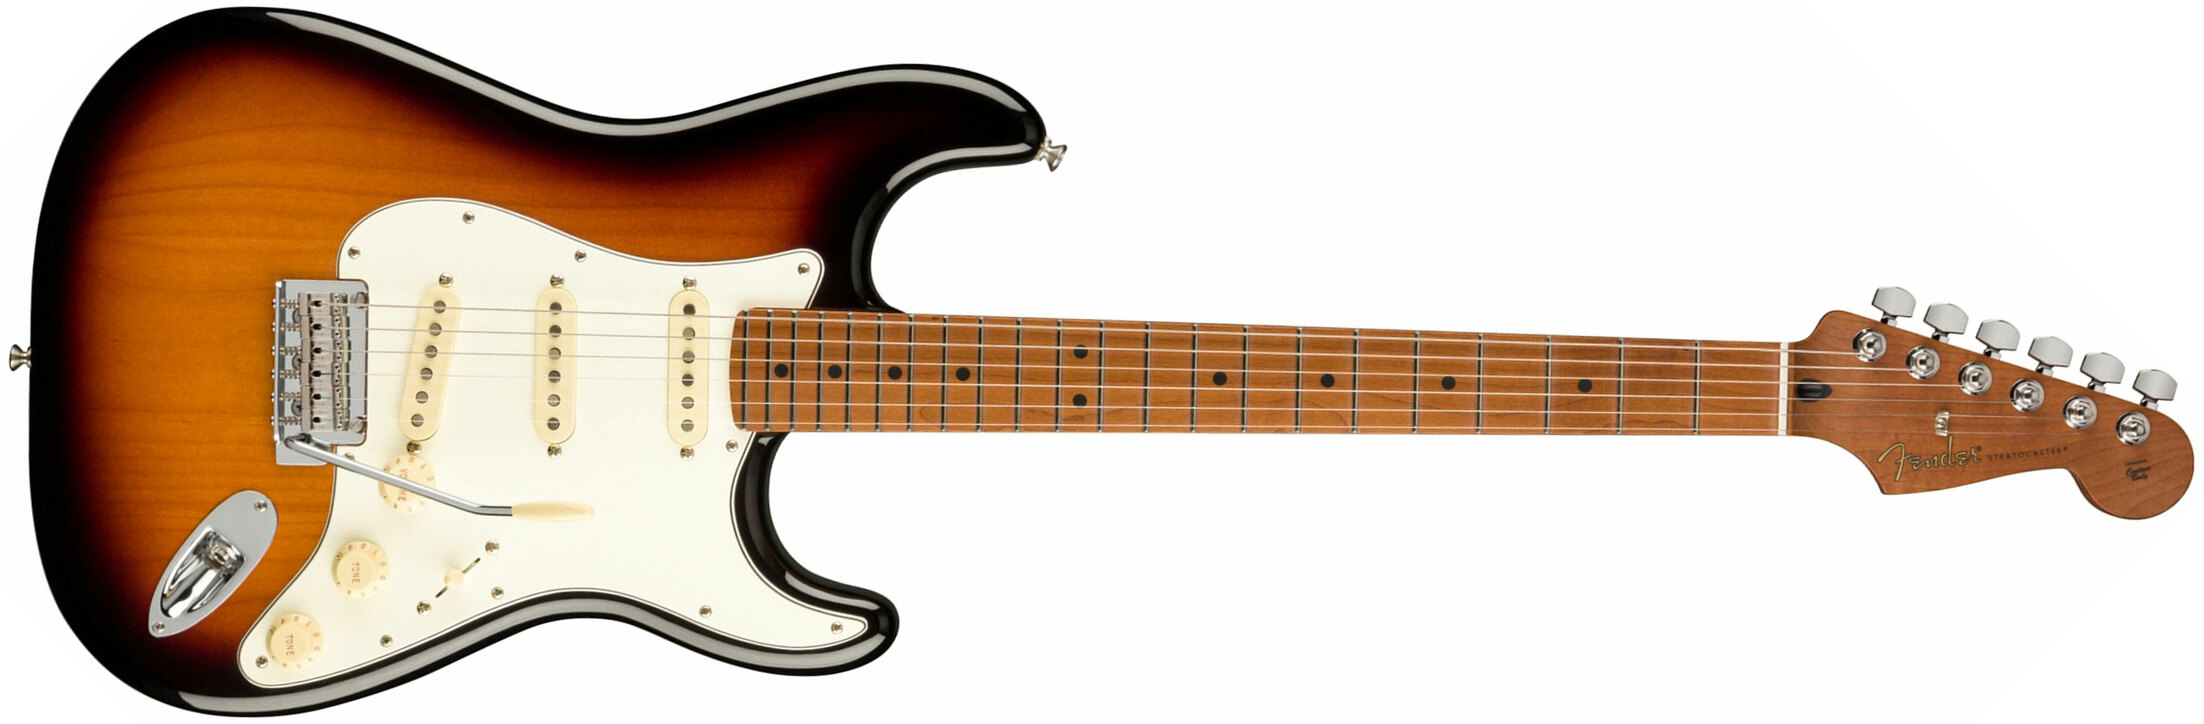 Fender Strat Player 1959 Texas Special Ltd Mex 3s Mn - 2-color Sunburst - Guitarra eléctrica con forma de str. - Main picture